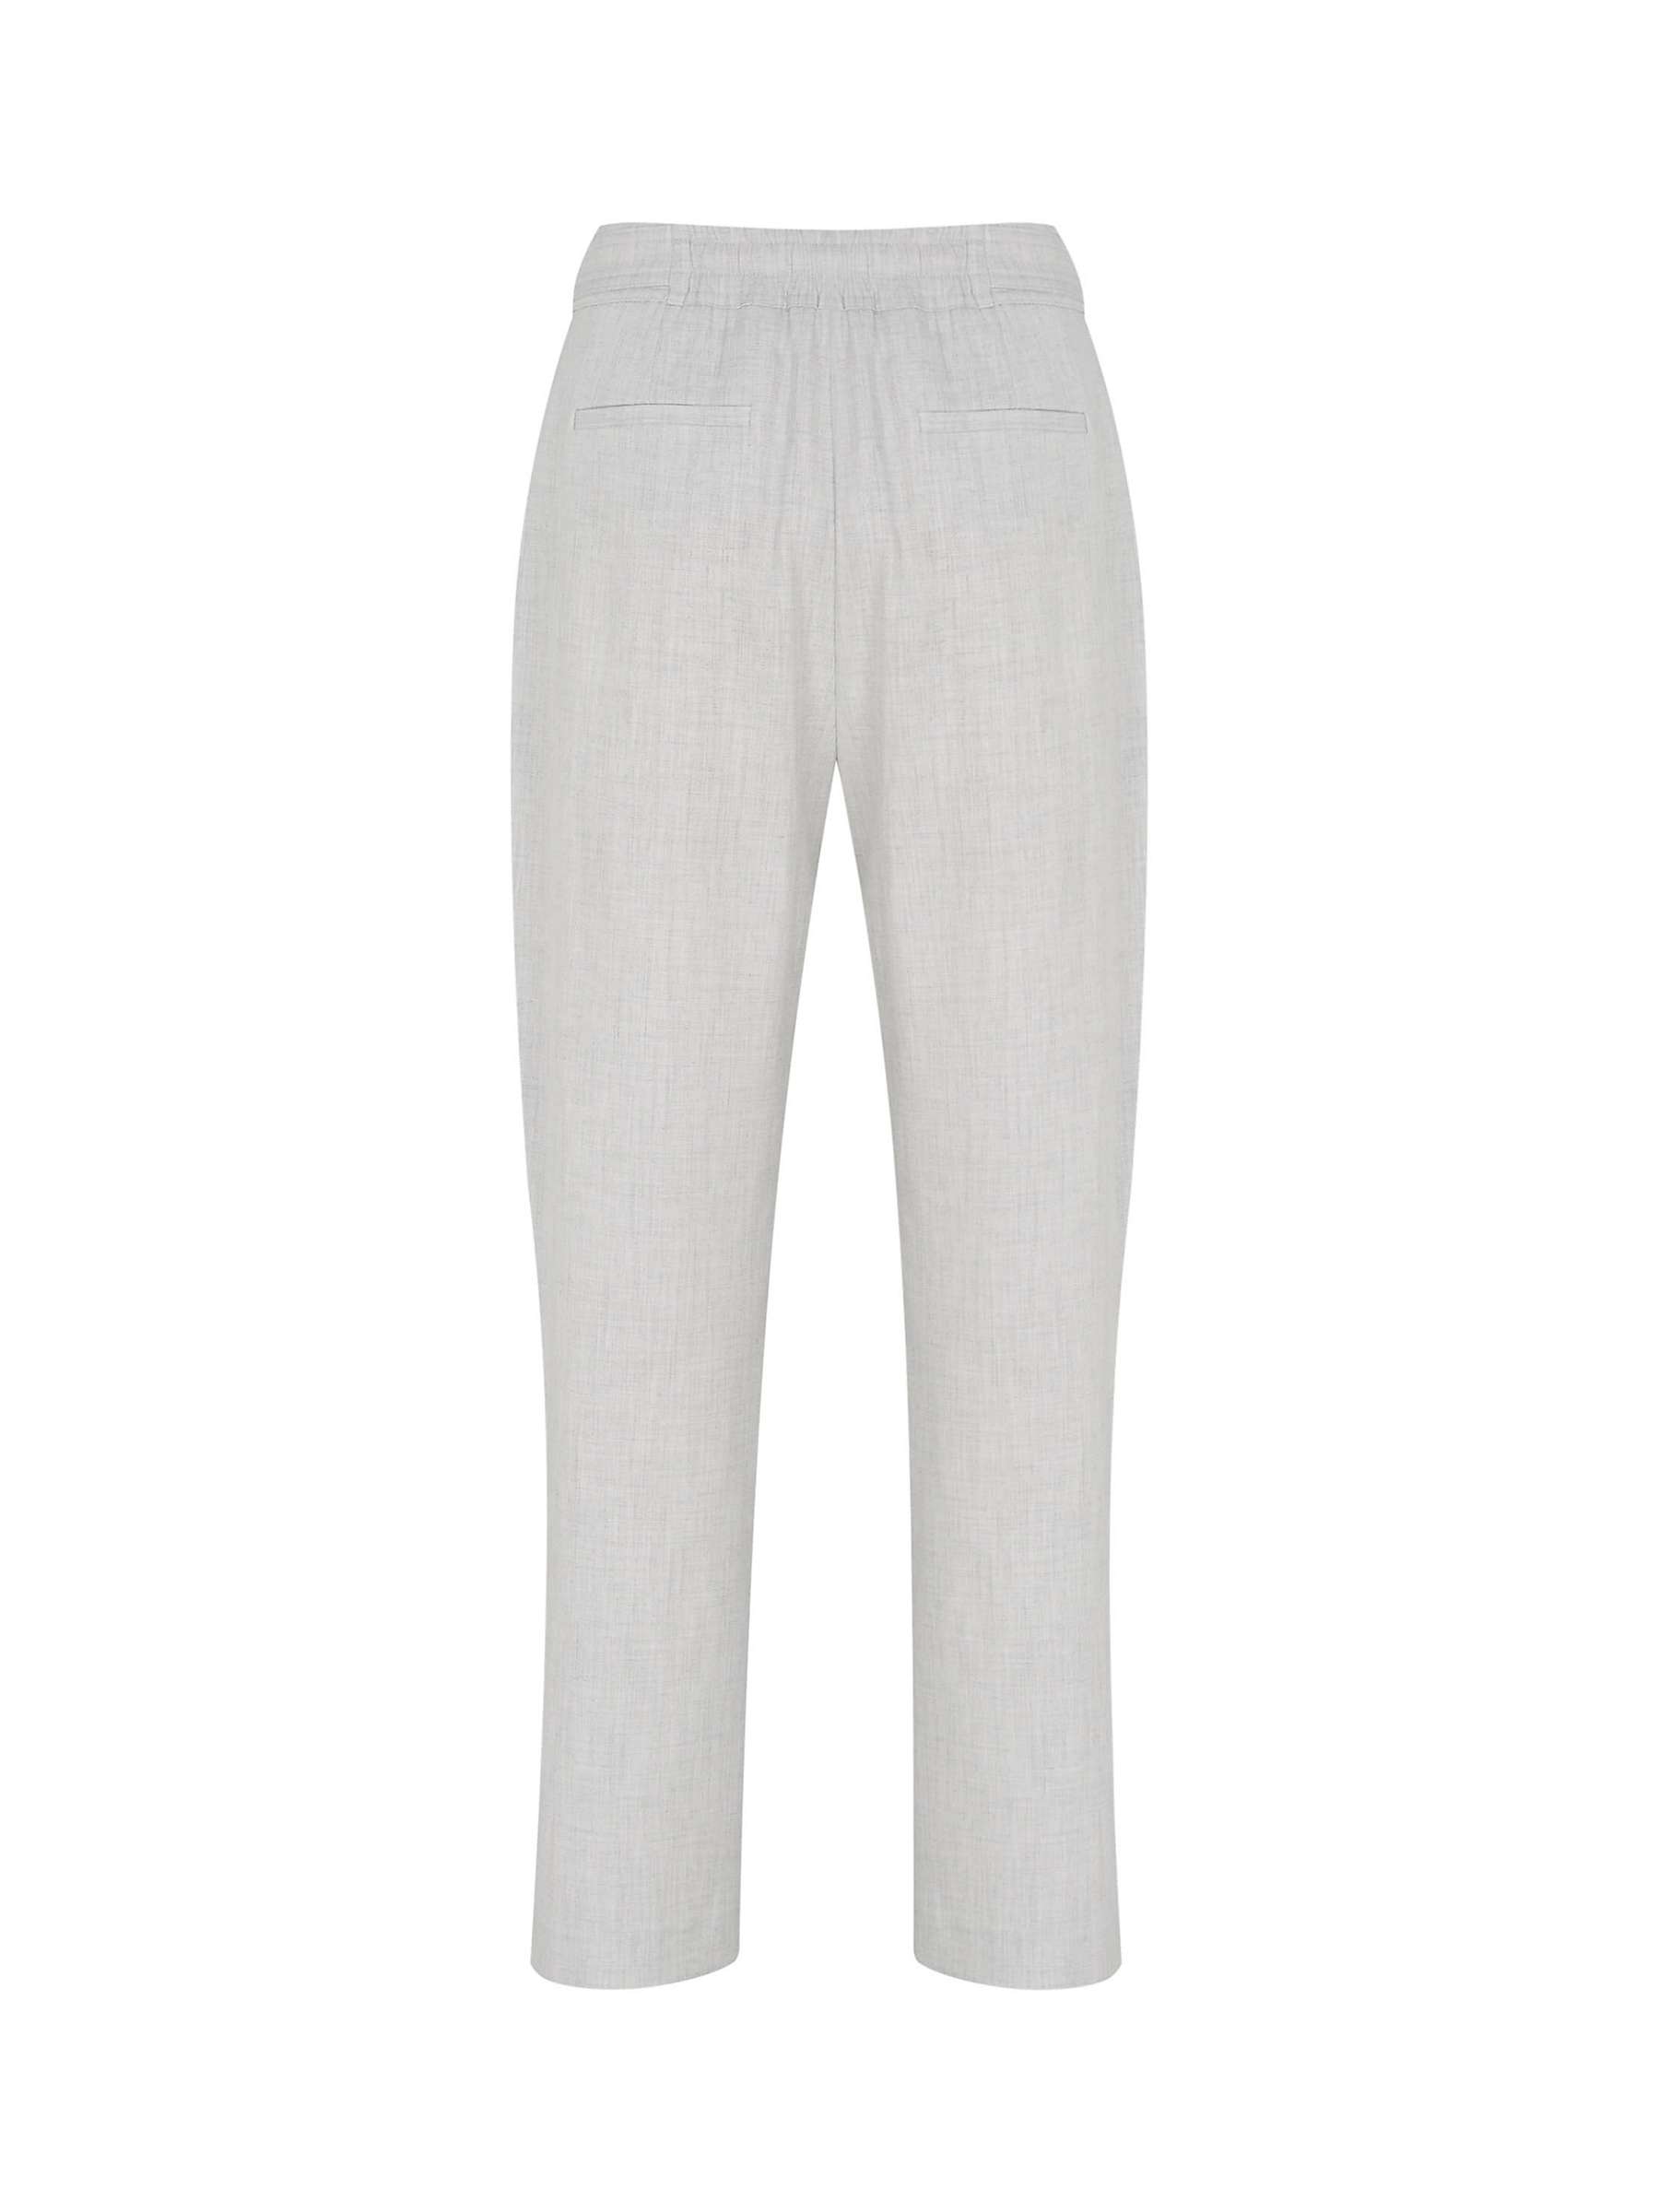 Buy Mint Velvet Tapered Trousers, Light Grey Online at johnlewis.com